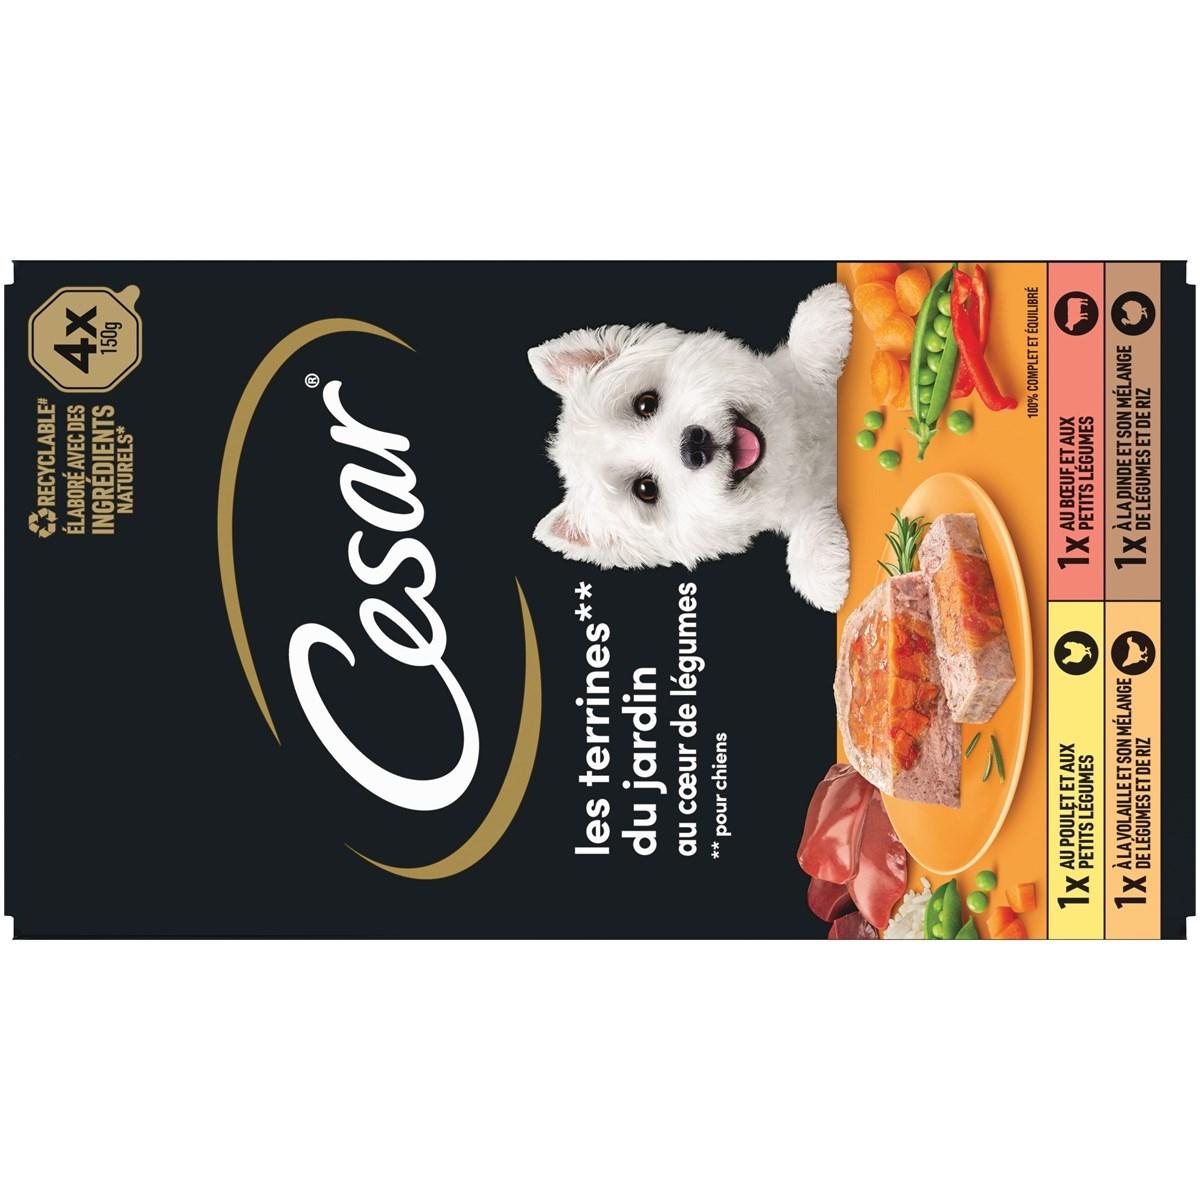 CESAR 32 Barquettes en terrine coeur de légumes pour chien 150g (8x4)